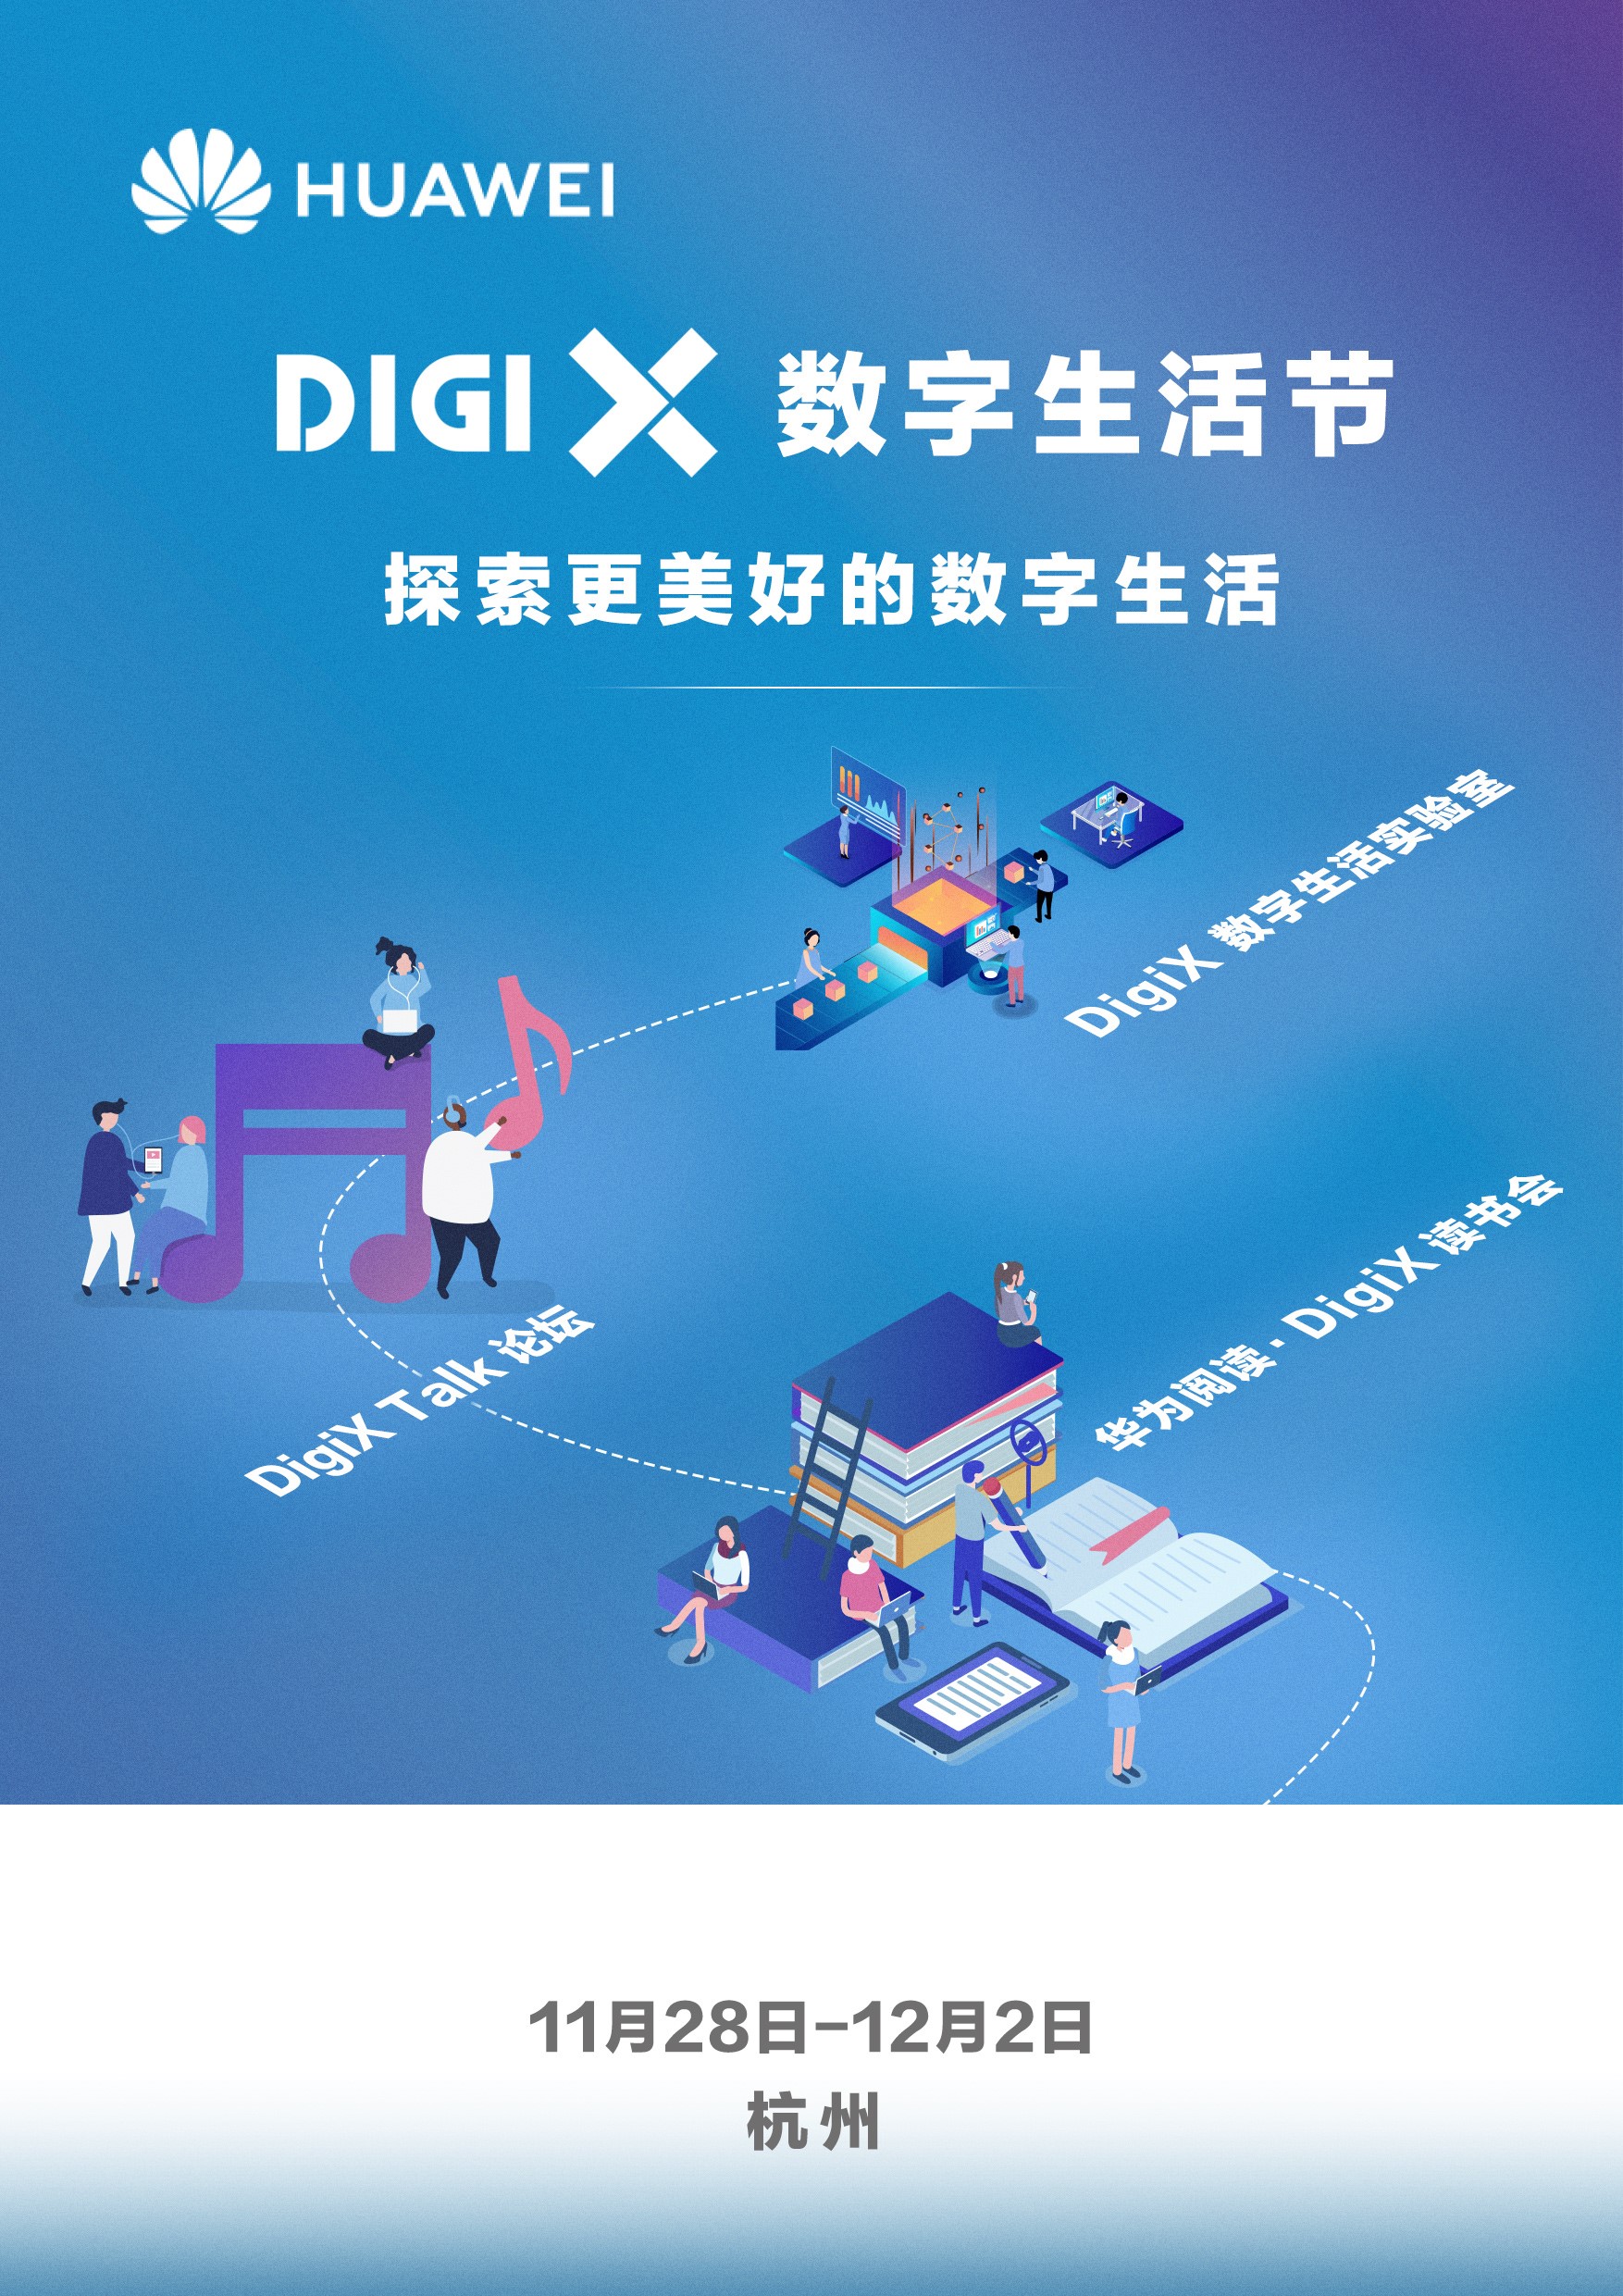 畅享美好数字生活 华为“DigiX数字生活节”登陆杭州